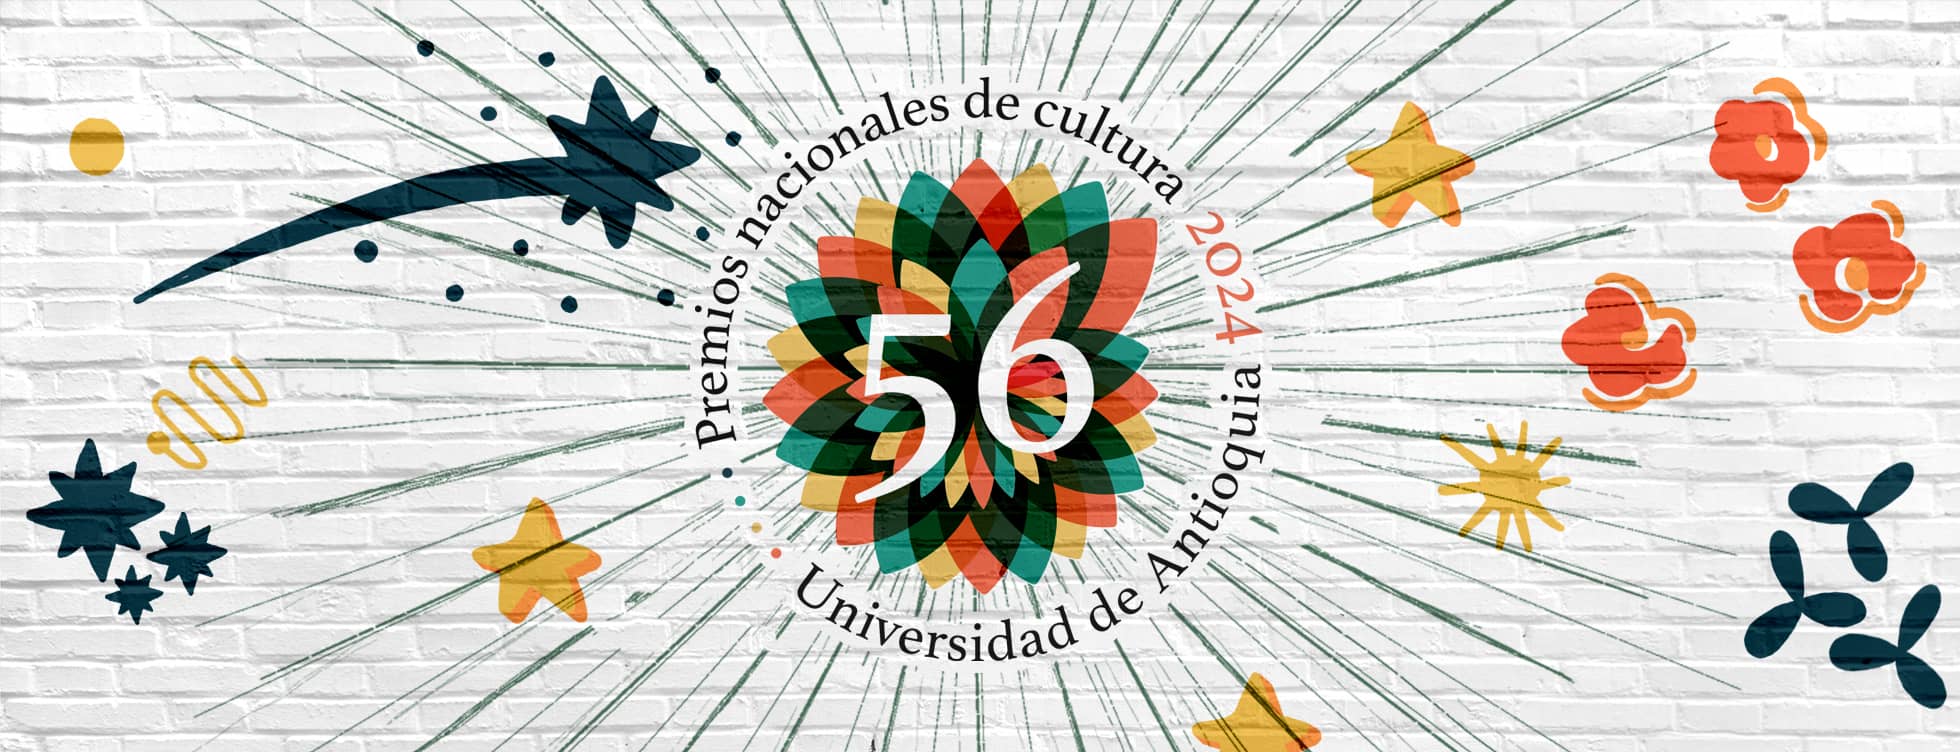 56 Premios Nacionales de Cultura UdeA